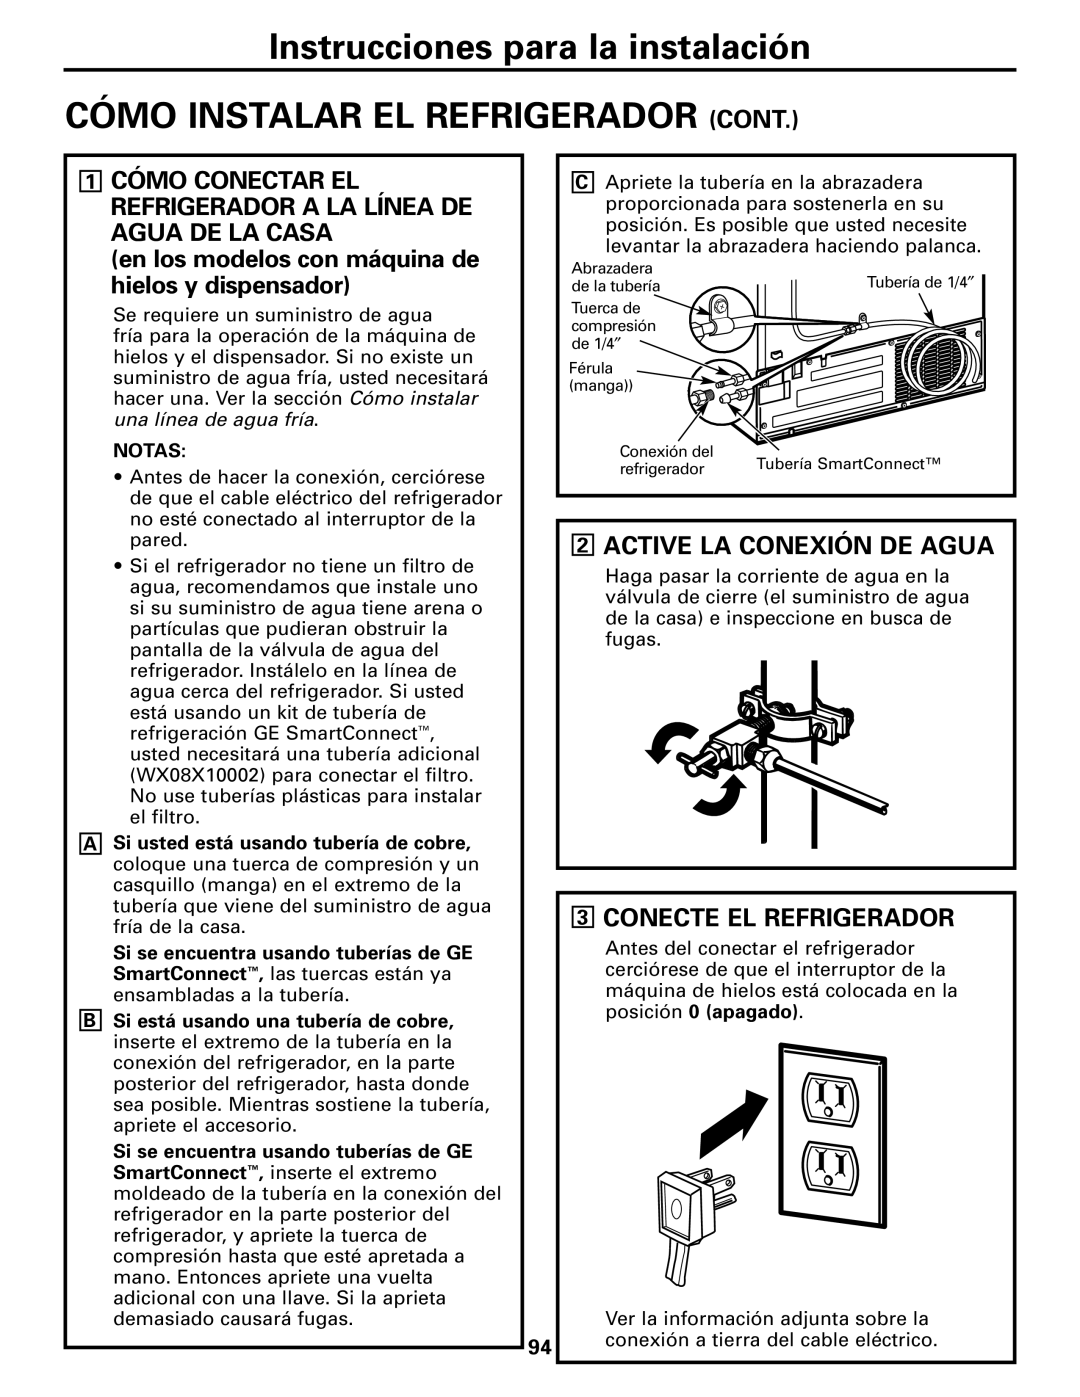 GE Monogram 23 Cómo Instalar El Refrigerador Cont, 2ACTIVE LA CONEXIÓN DE AGUA, 3CONECTE EL REFRIGERADOR 